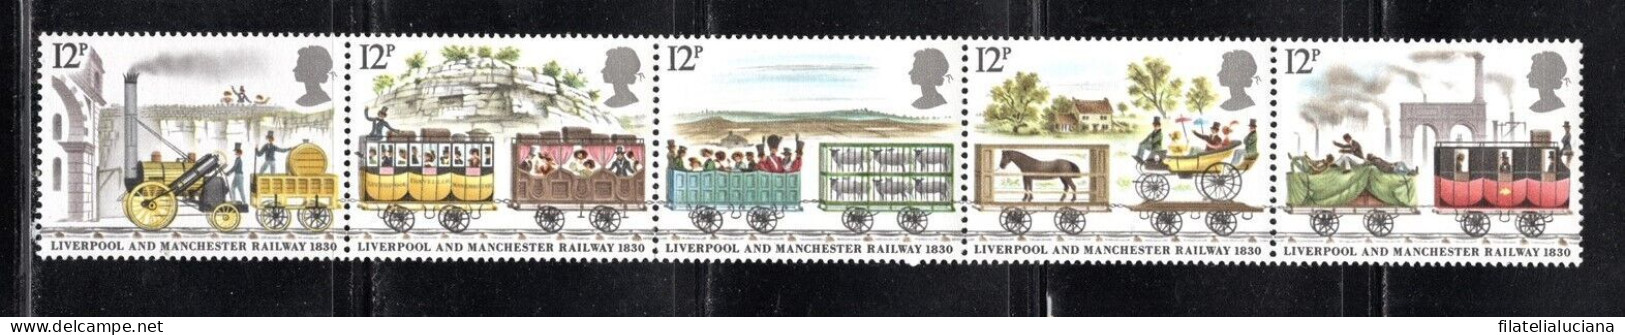 Great Britain Stamp Scott #904-908 (SG1113-1117), Railway, Strip Of 5, MNH - Tramways